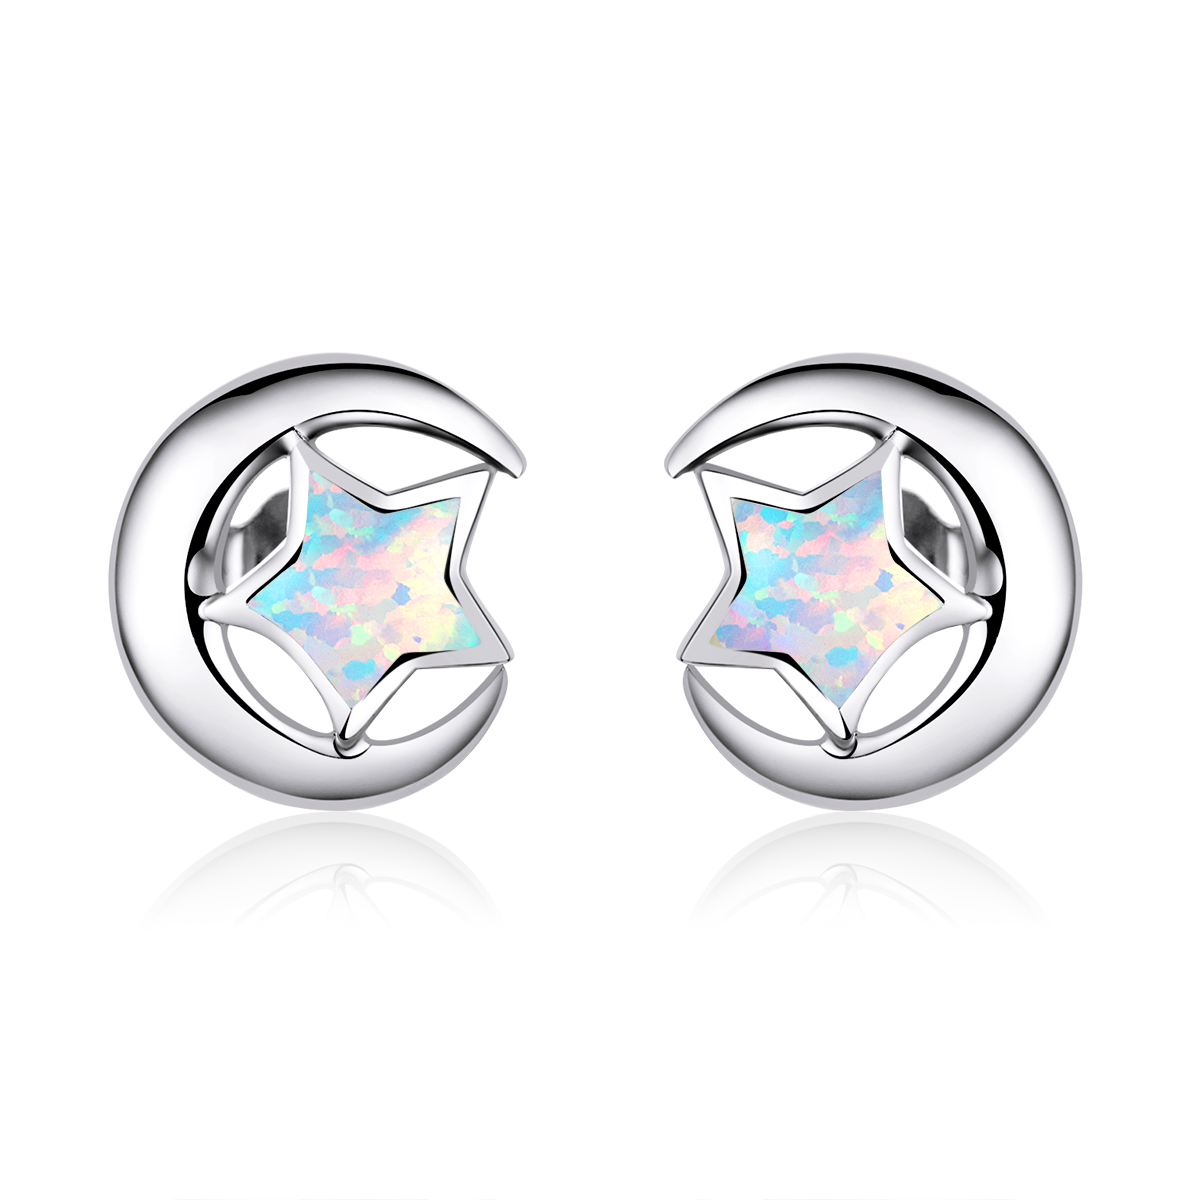 pandora style opal moon stud earrings sce816 a